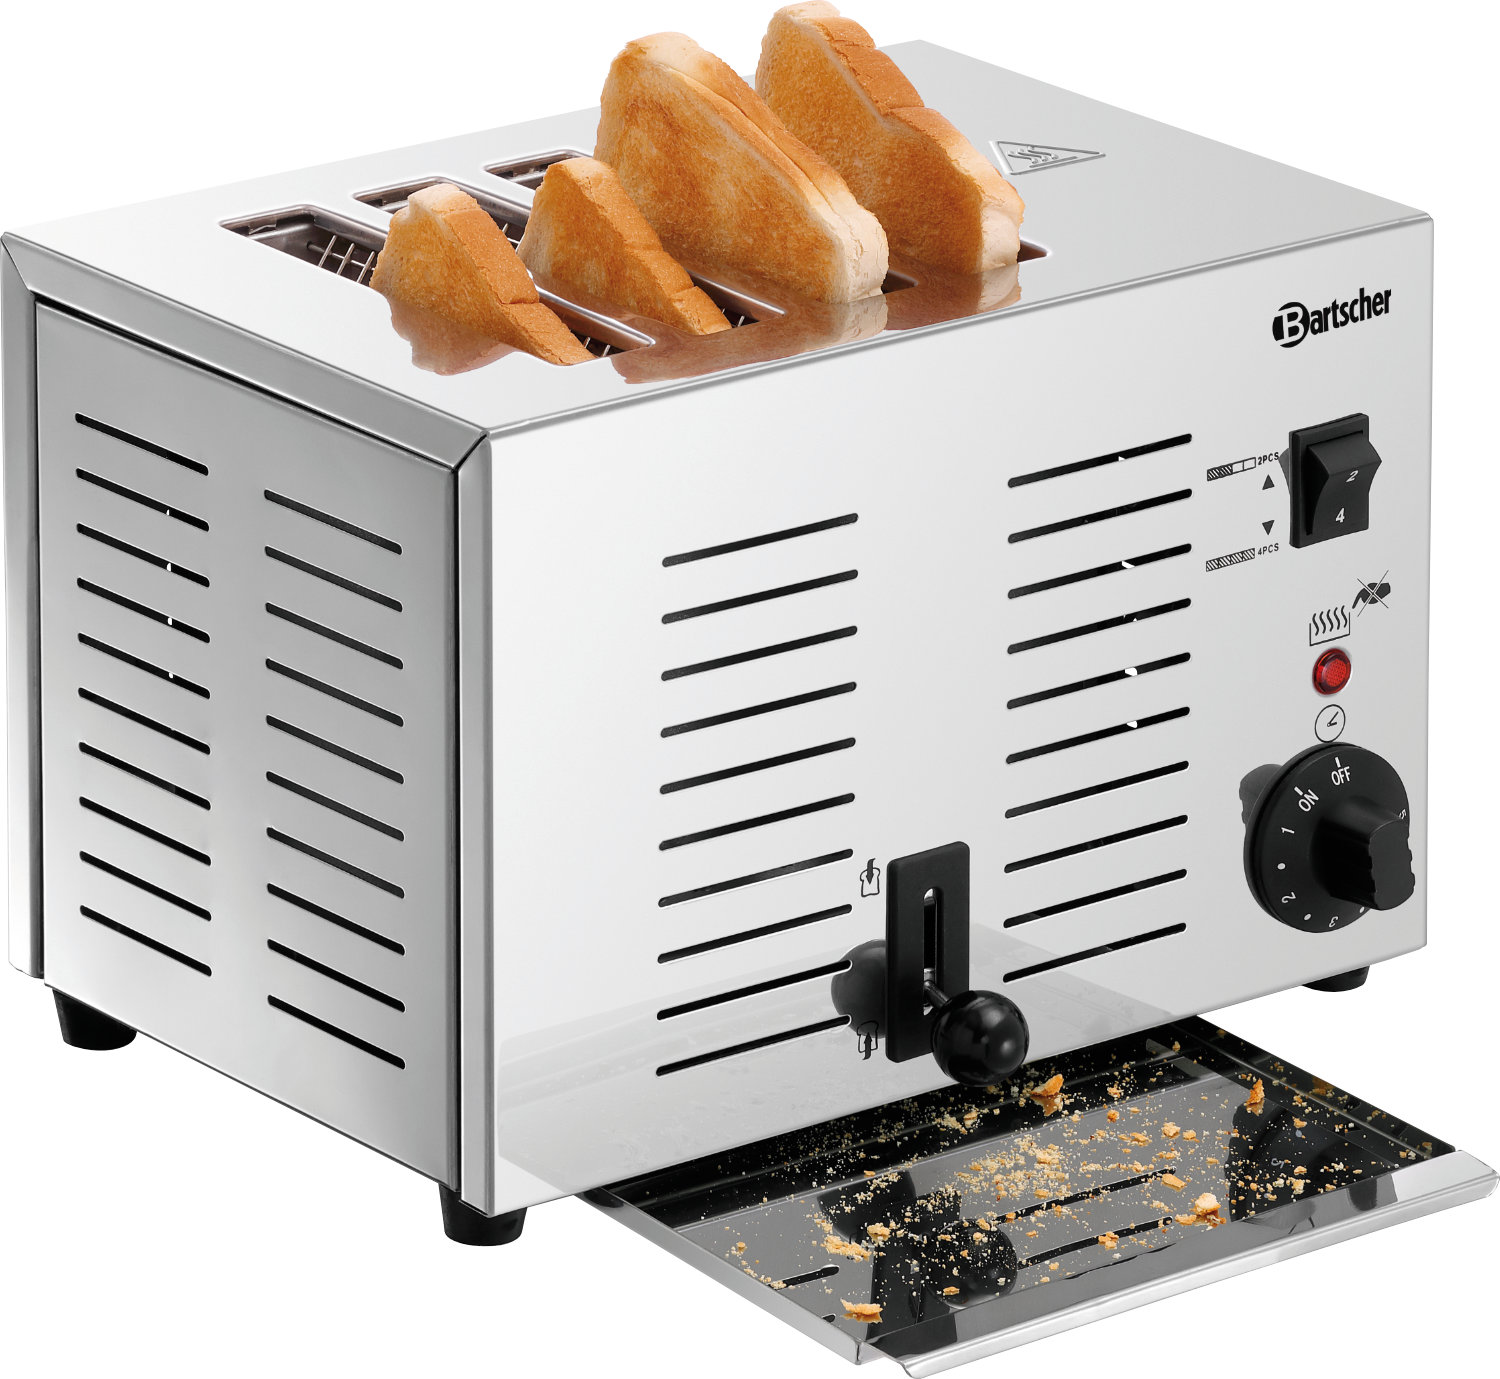  Bartscher Toaster TS40 